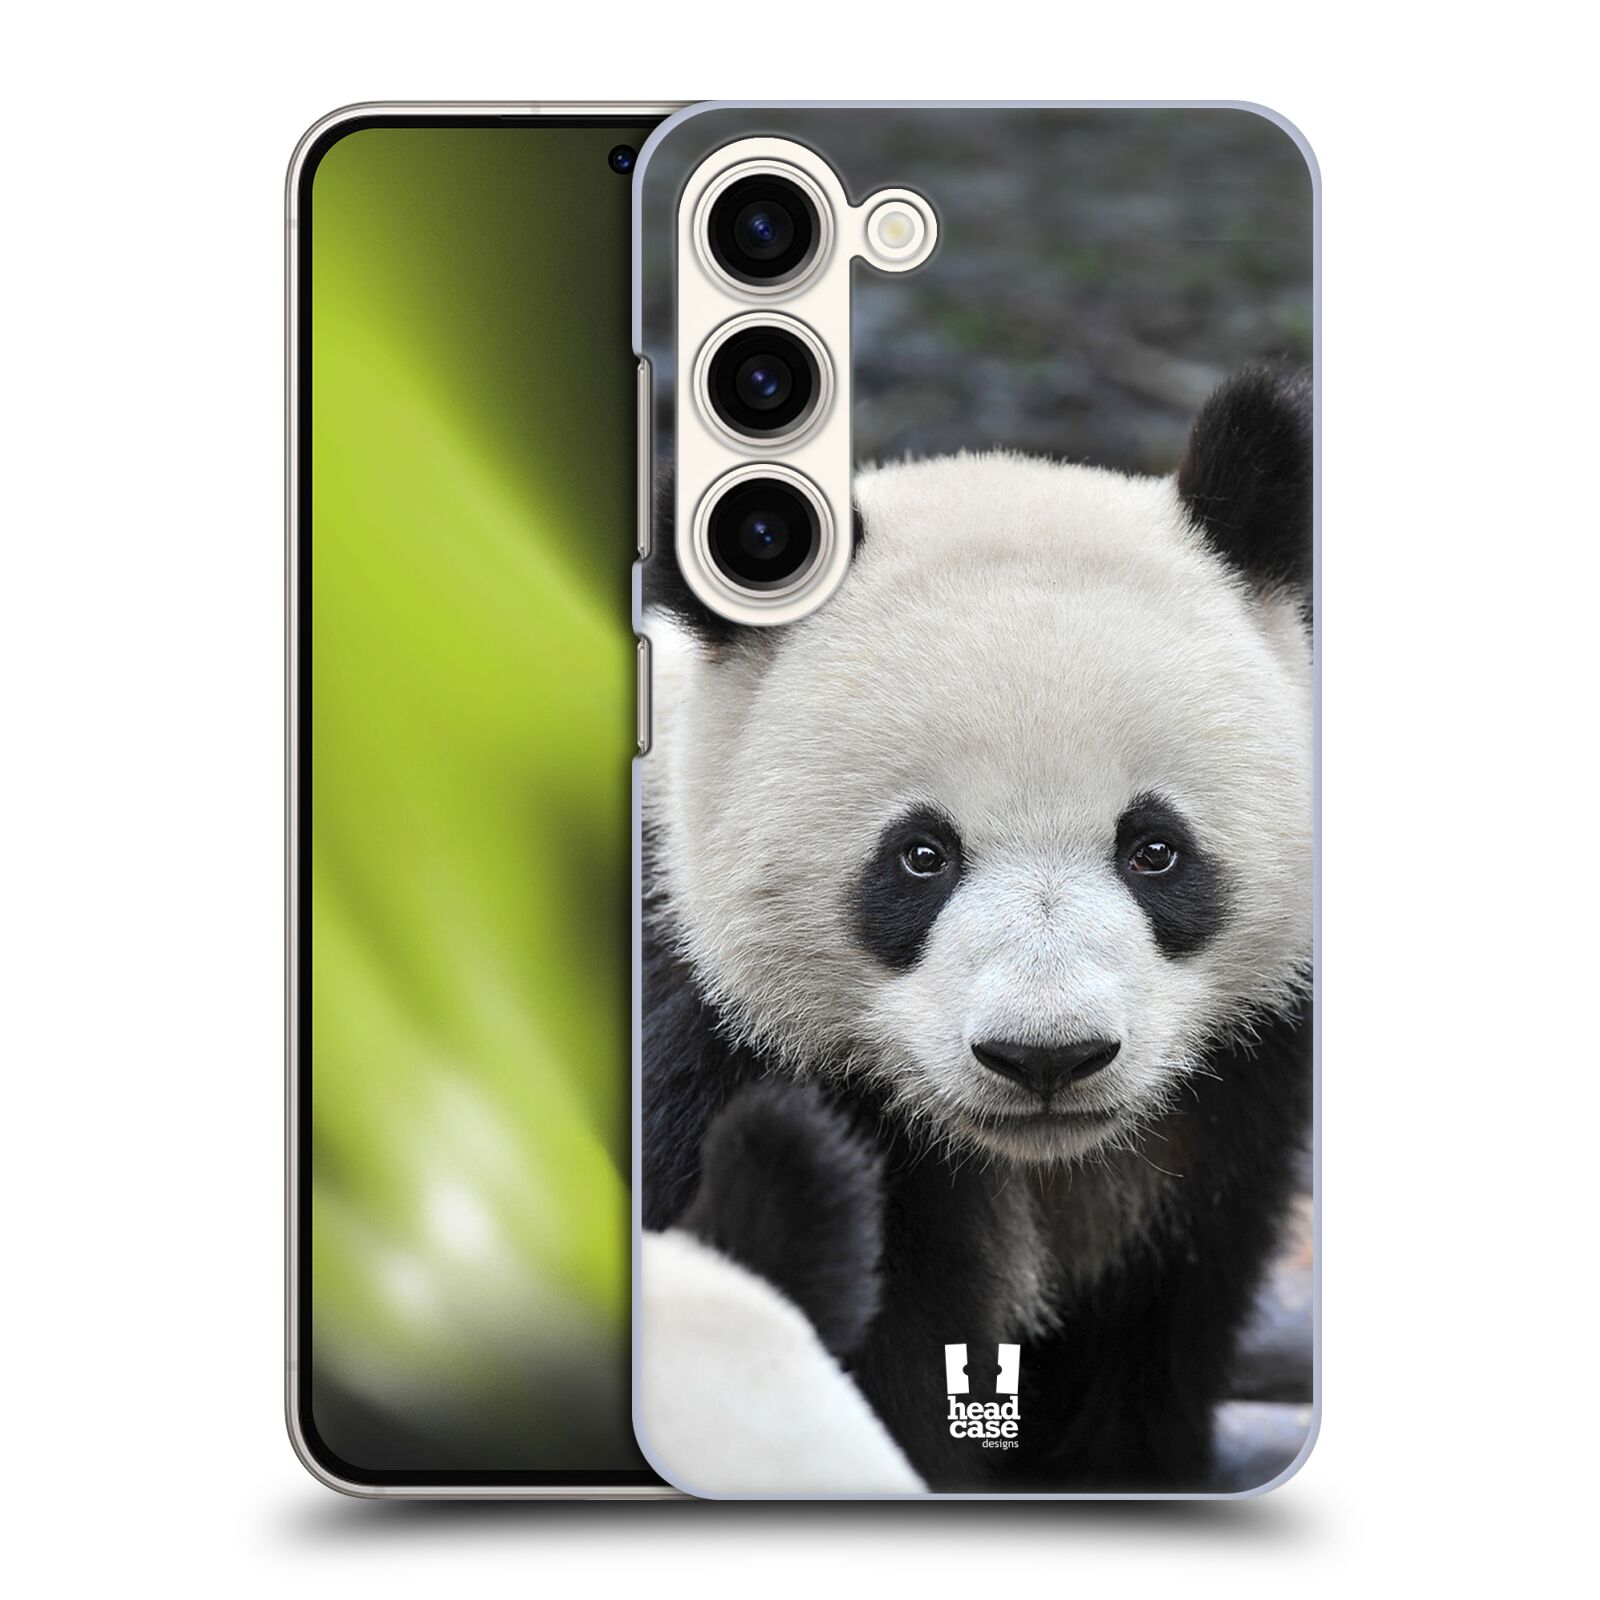 Plastový obal HEAD CASE na mobil Samsung Galaxy S23 vzor Divočina, Divoký život a zvířata foto MEDVĚD PANDA